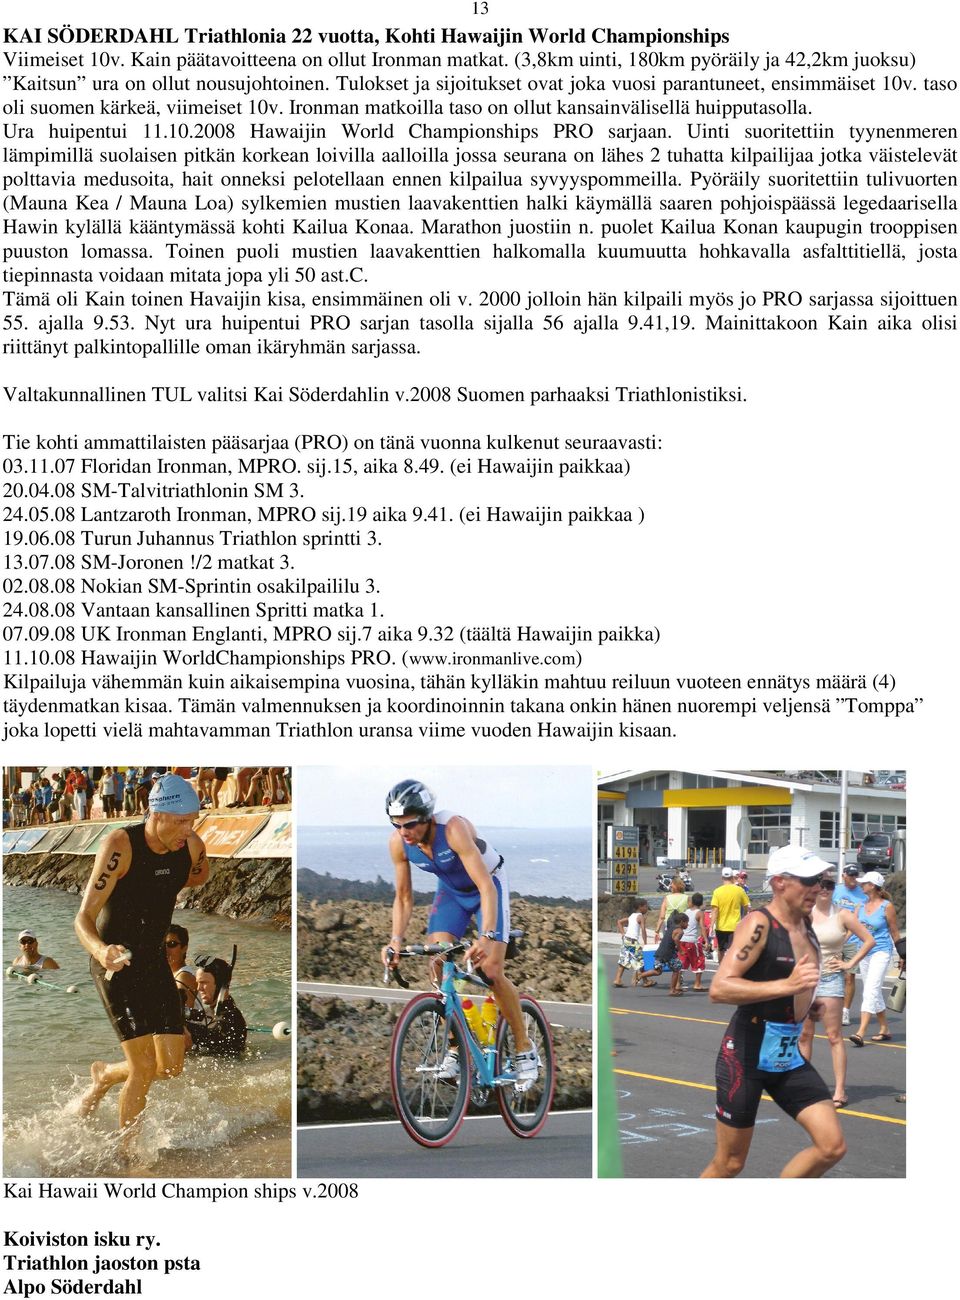 Ironman matkoilla taso on ollut kansainvälisellä huipputasolla. Ura huipentui 11.10.2008 Hawaijin World Championships PRO sarjaan.